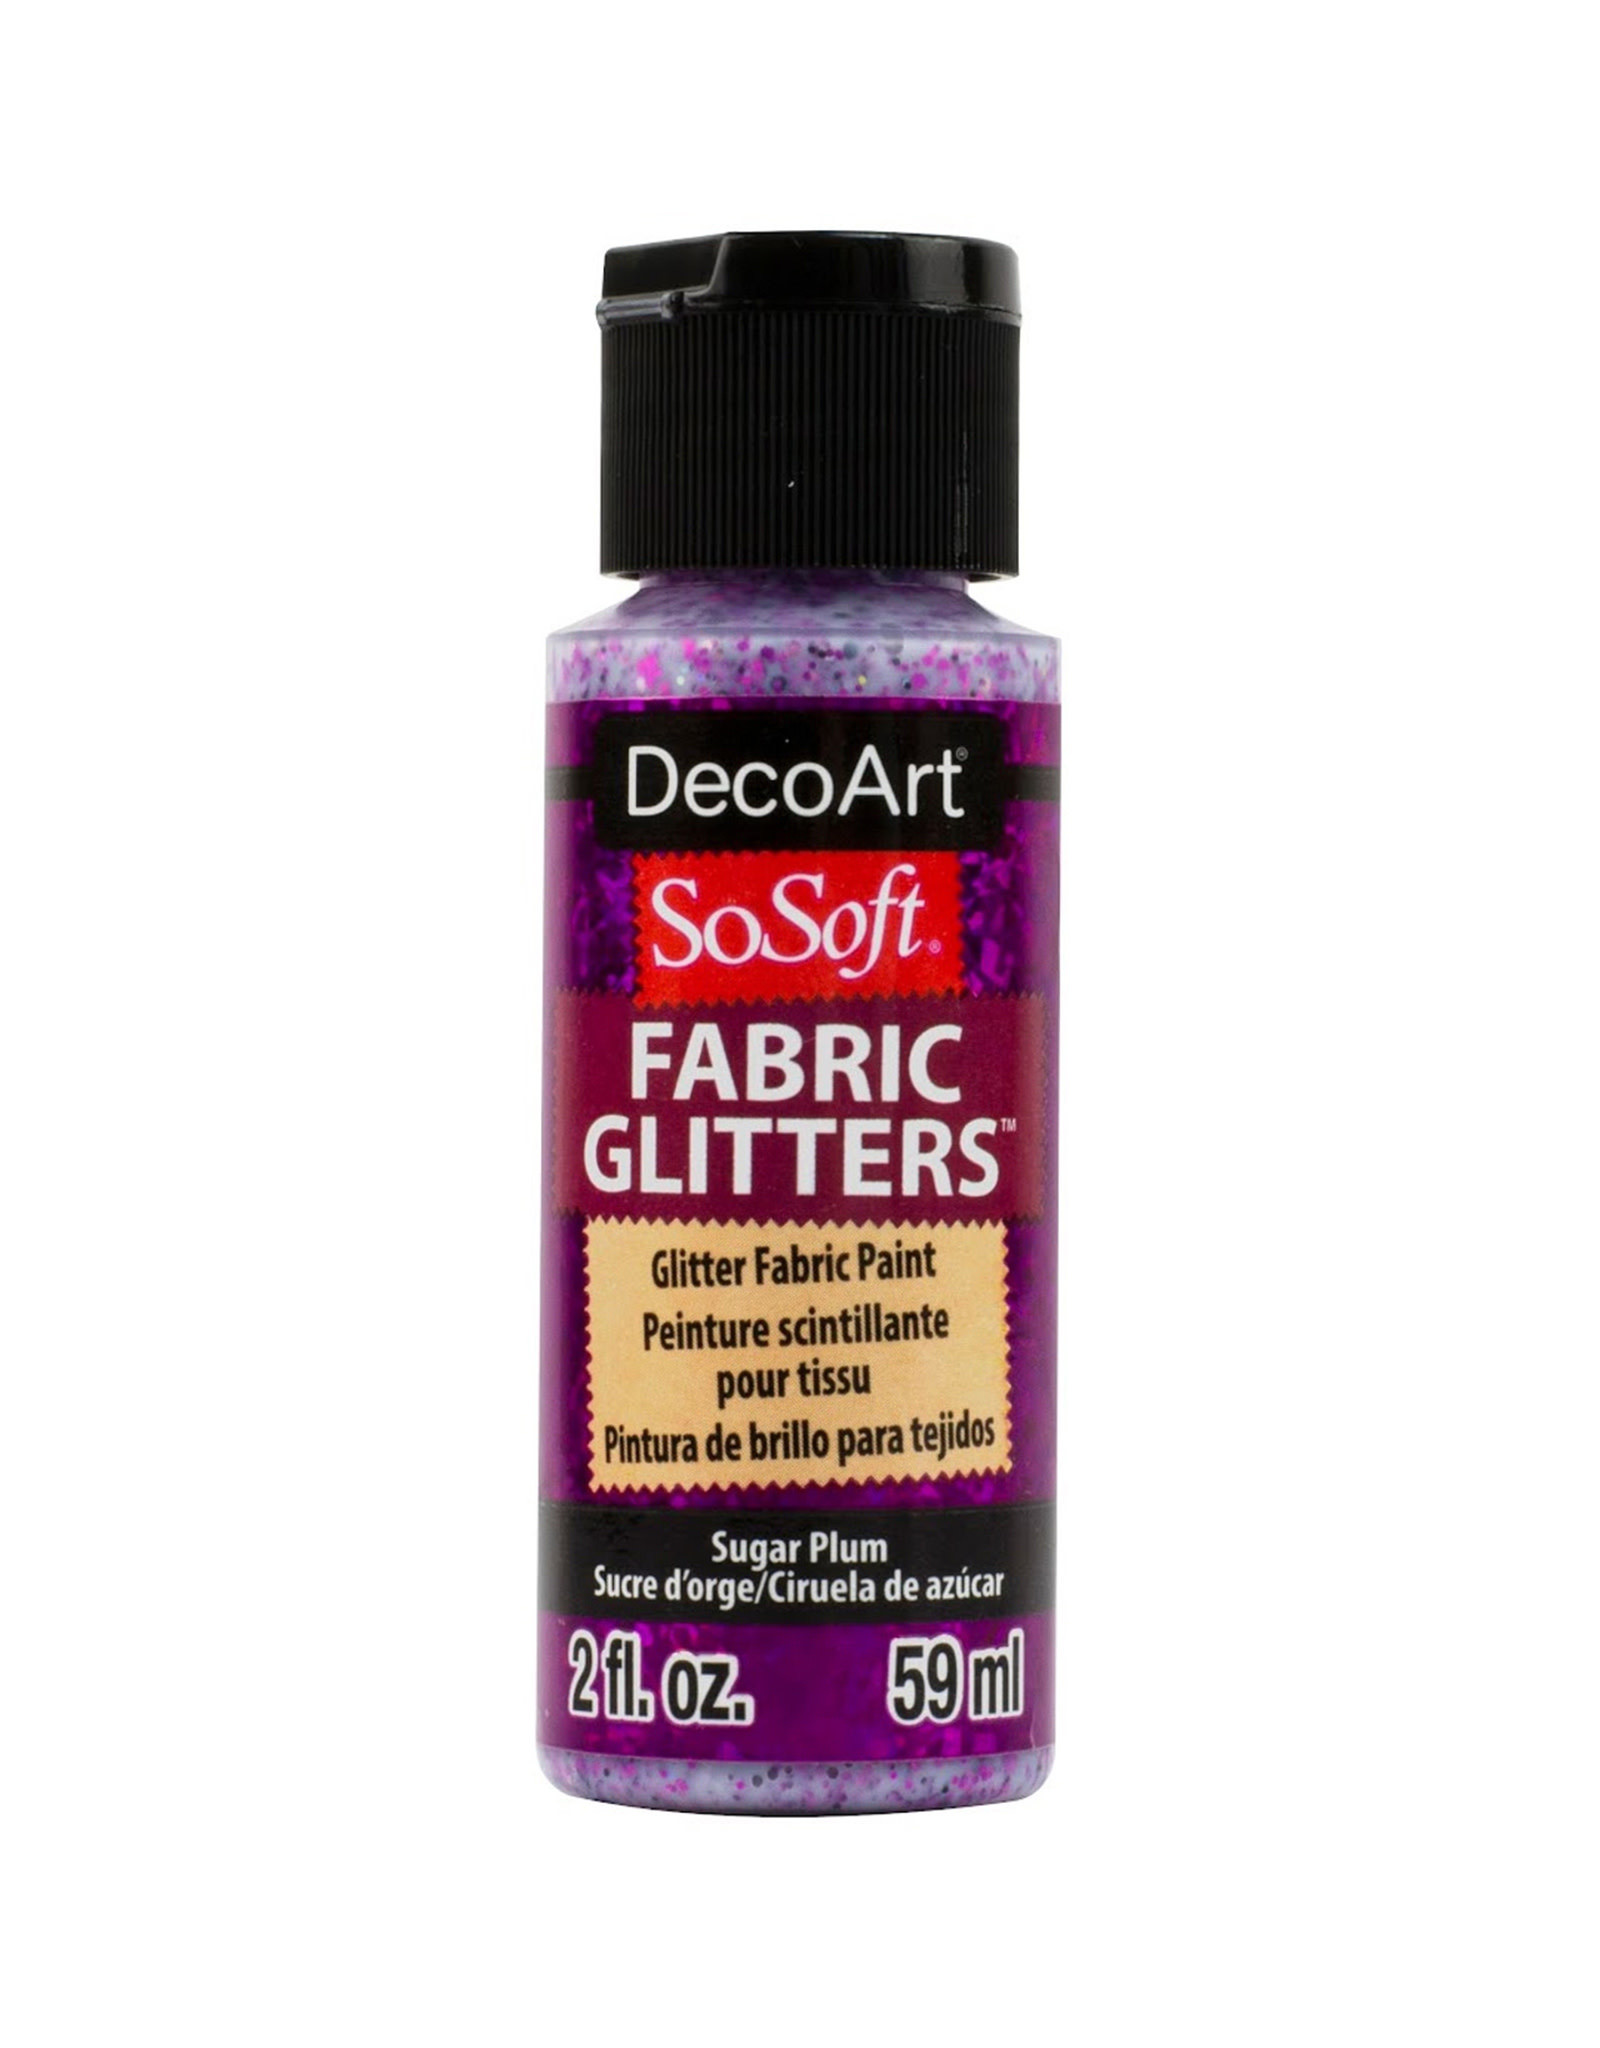 DecoArt DecoArt SoSoft Fabric Glitters, Sugar Plum 2oz